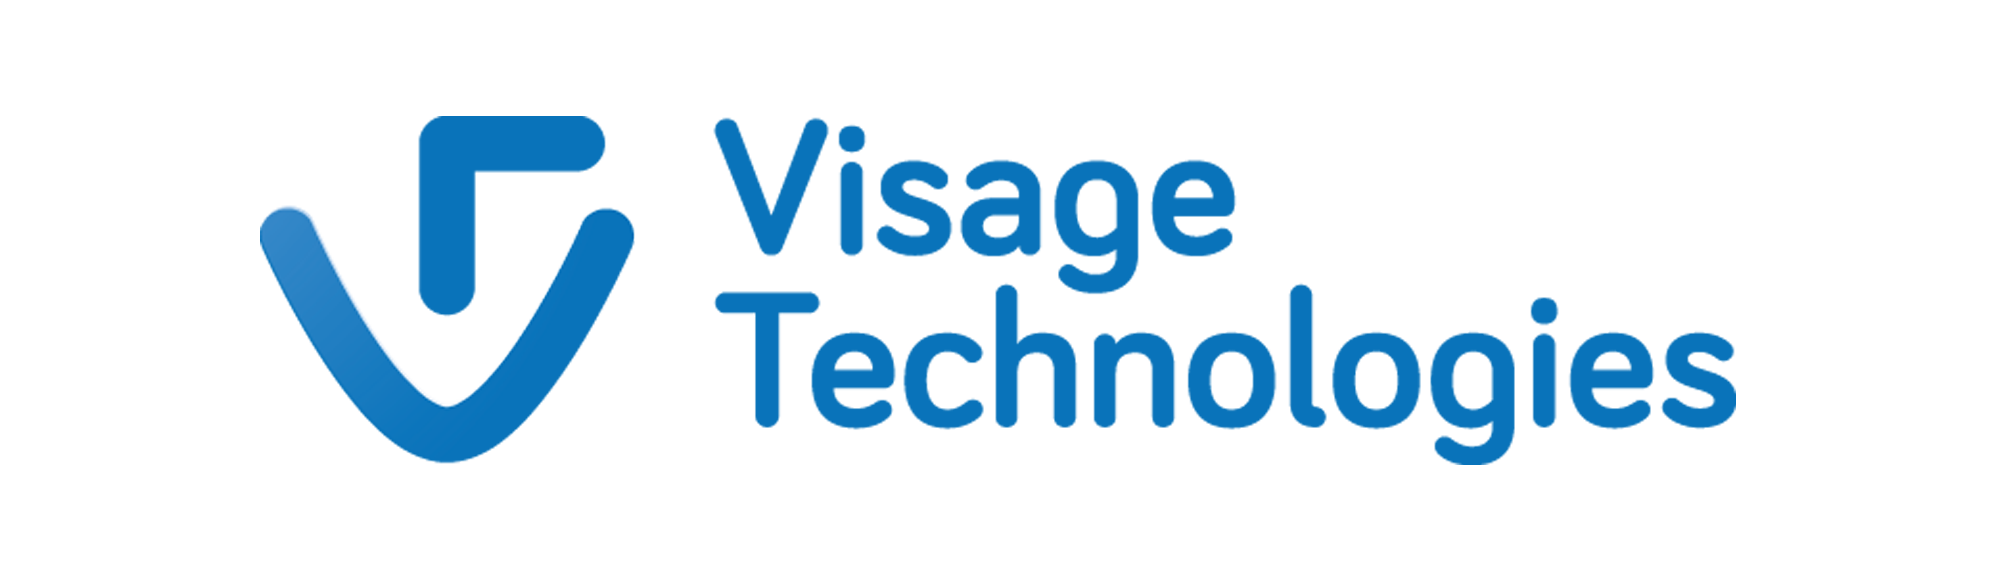 Visage-logotype01